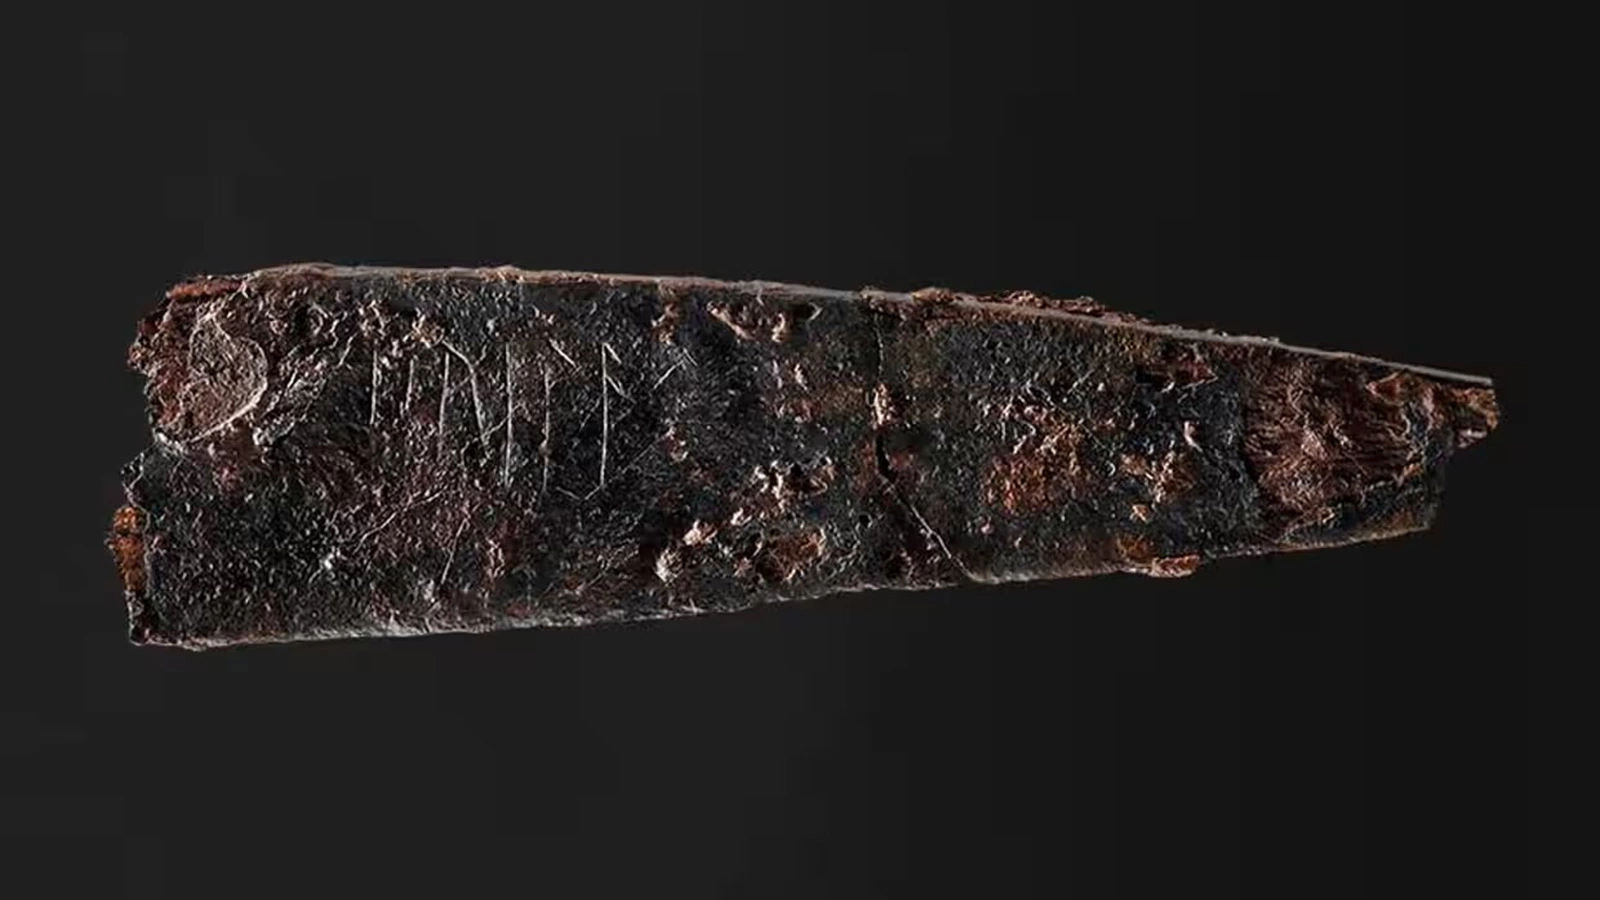 <p>Железный нож диаметром 8 см, который будет выставлен в музее Оденсе.&nbsp;Фото взято с сайта музея Оденсе</p>